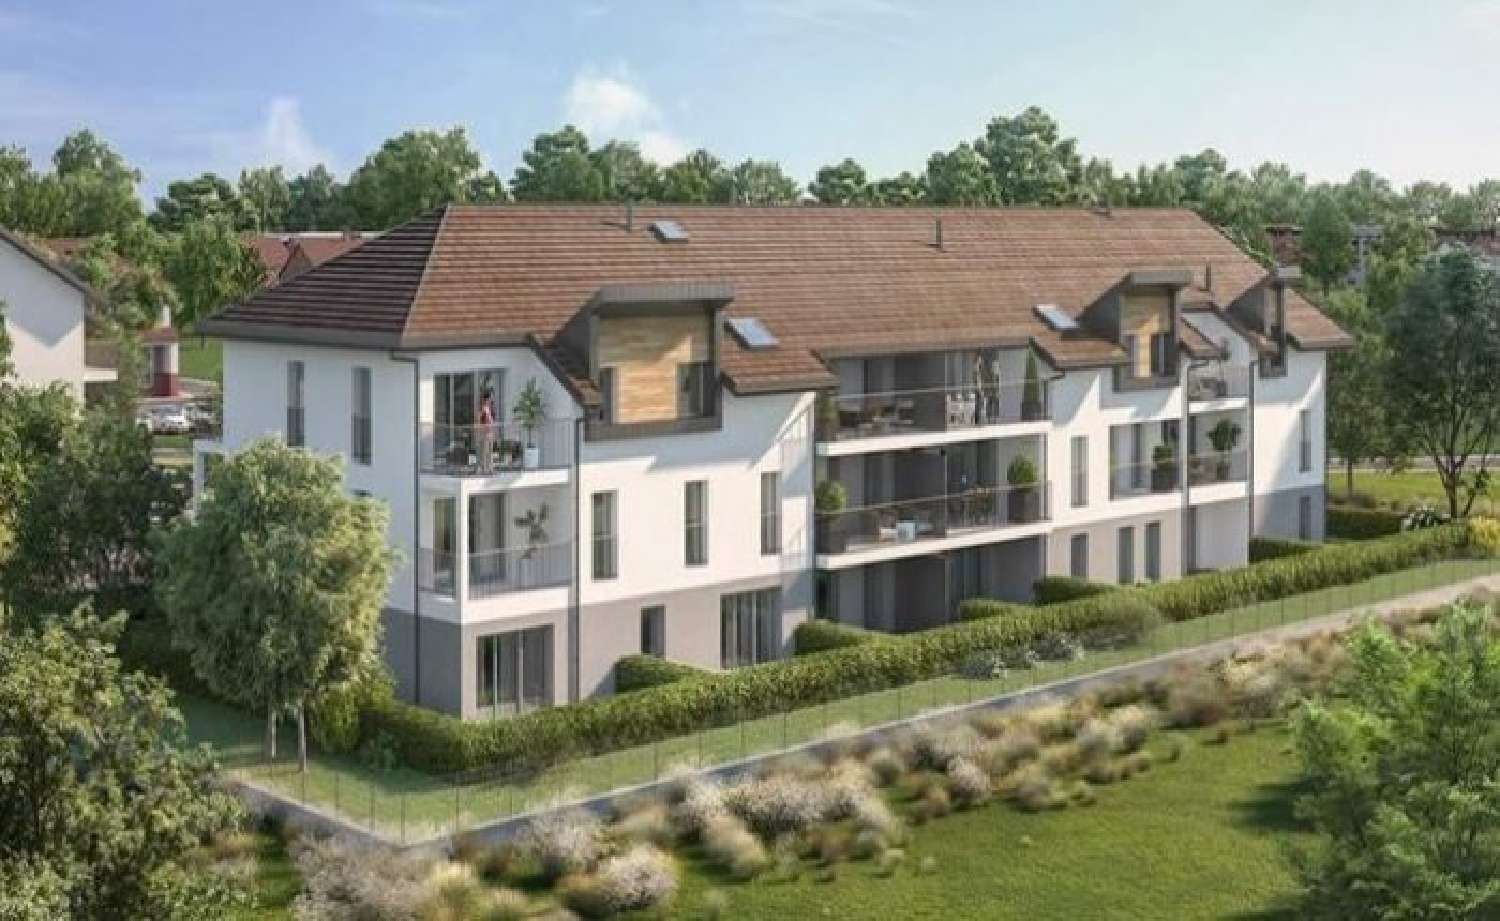 Cornier Haute-Savoie Wohnung/ Apartment Bild 6825208